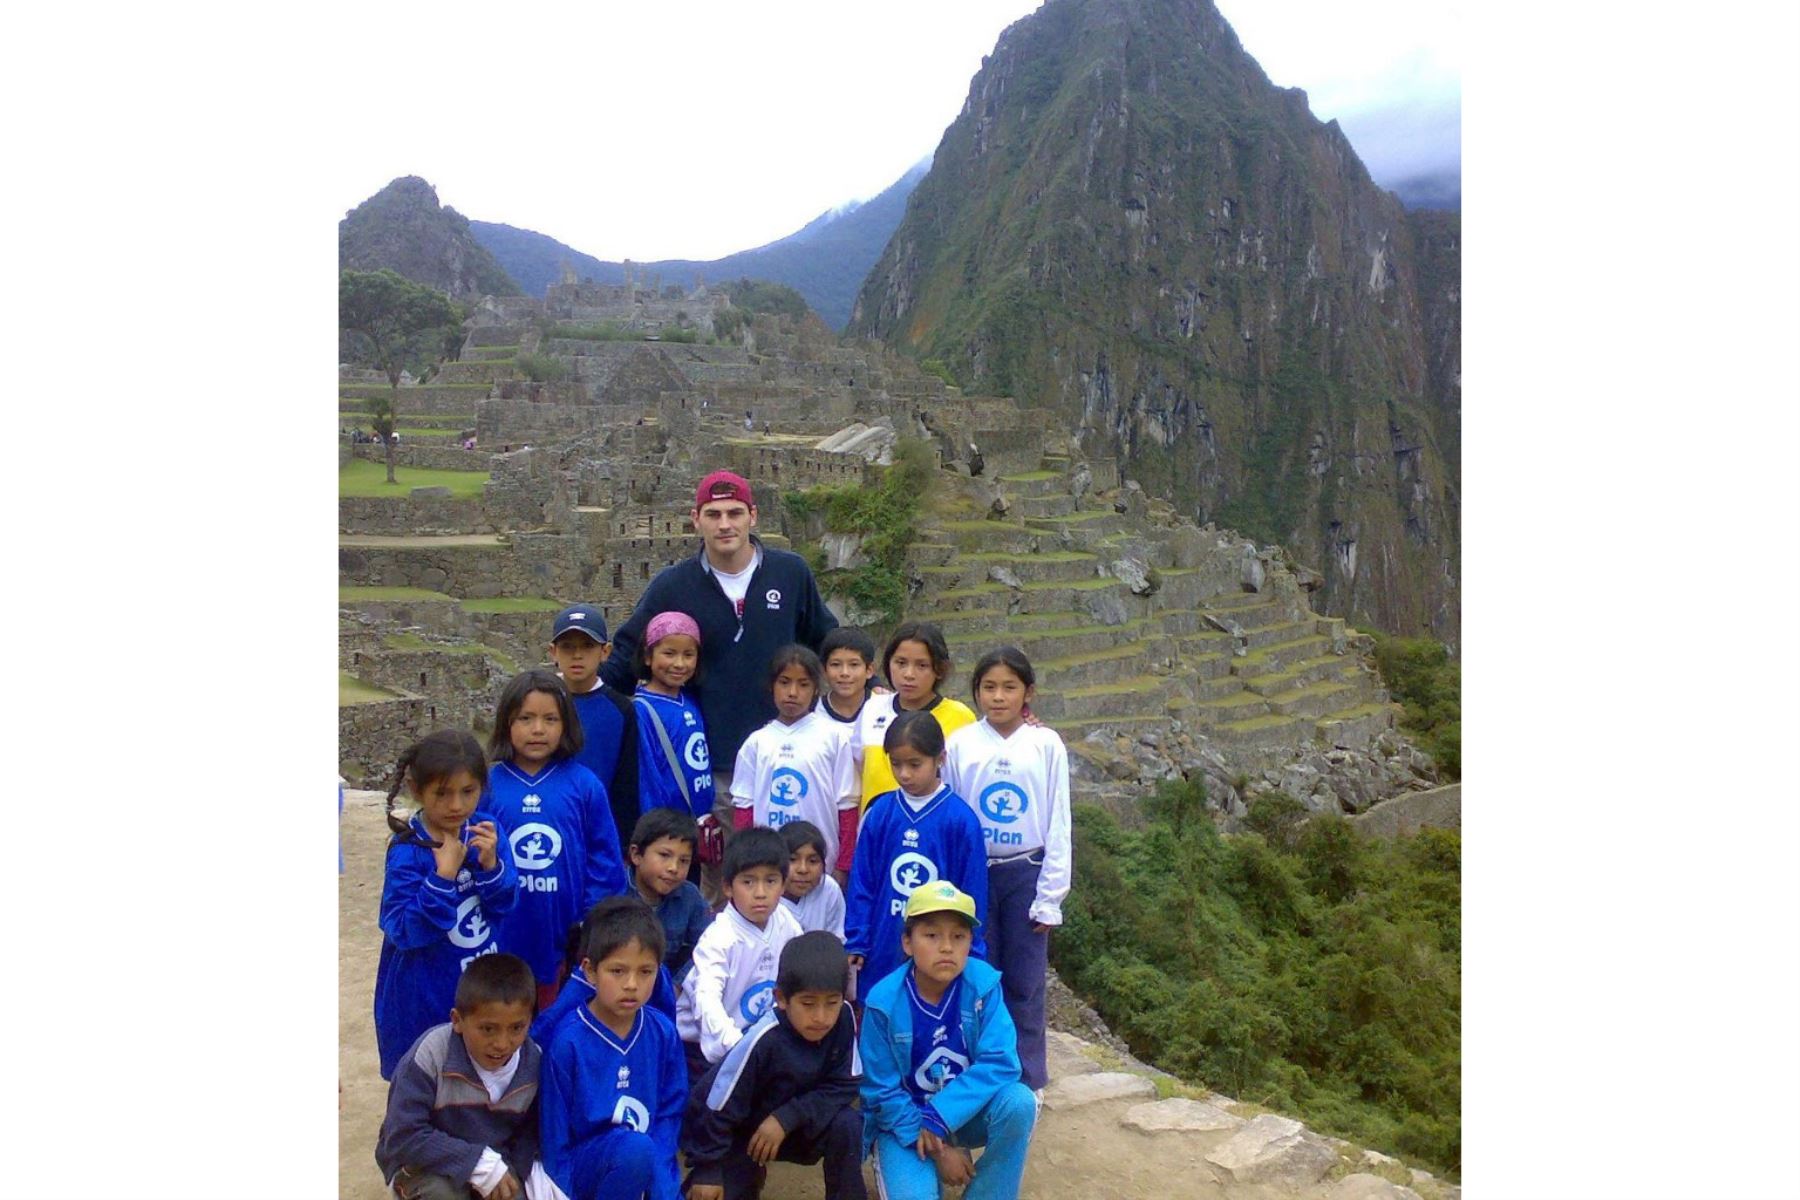 El capitán del equipo nacional de fútbol español, el portero Iker Casillas, posó en la ciudadela inca de Machu Picchu con un grupo de niños huérfanos miembros de una ONG que el jugador de fútbol apoya en Cusco, Perú. Casillas jugó un partido de fútbol con los niños y visitará otras dos ciudades en Cusco como parte de su programa de apoyo a la ONG. Foto: AFP/Moises Bendezú